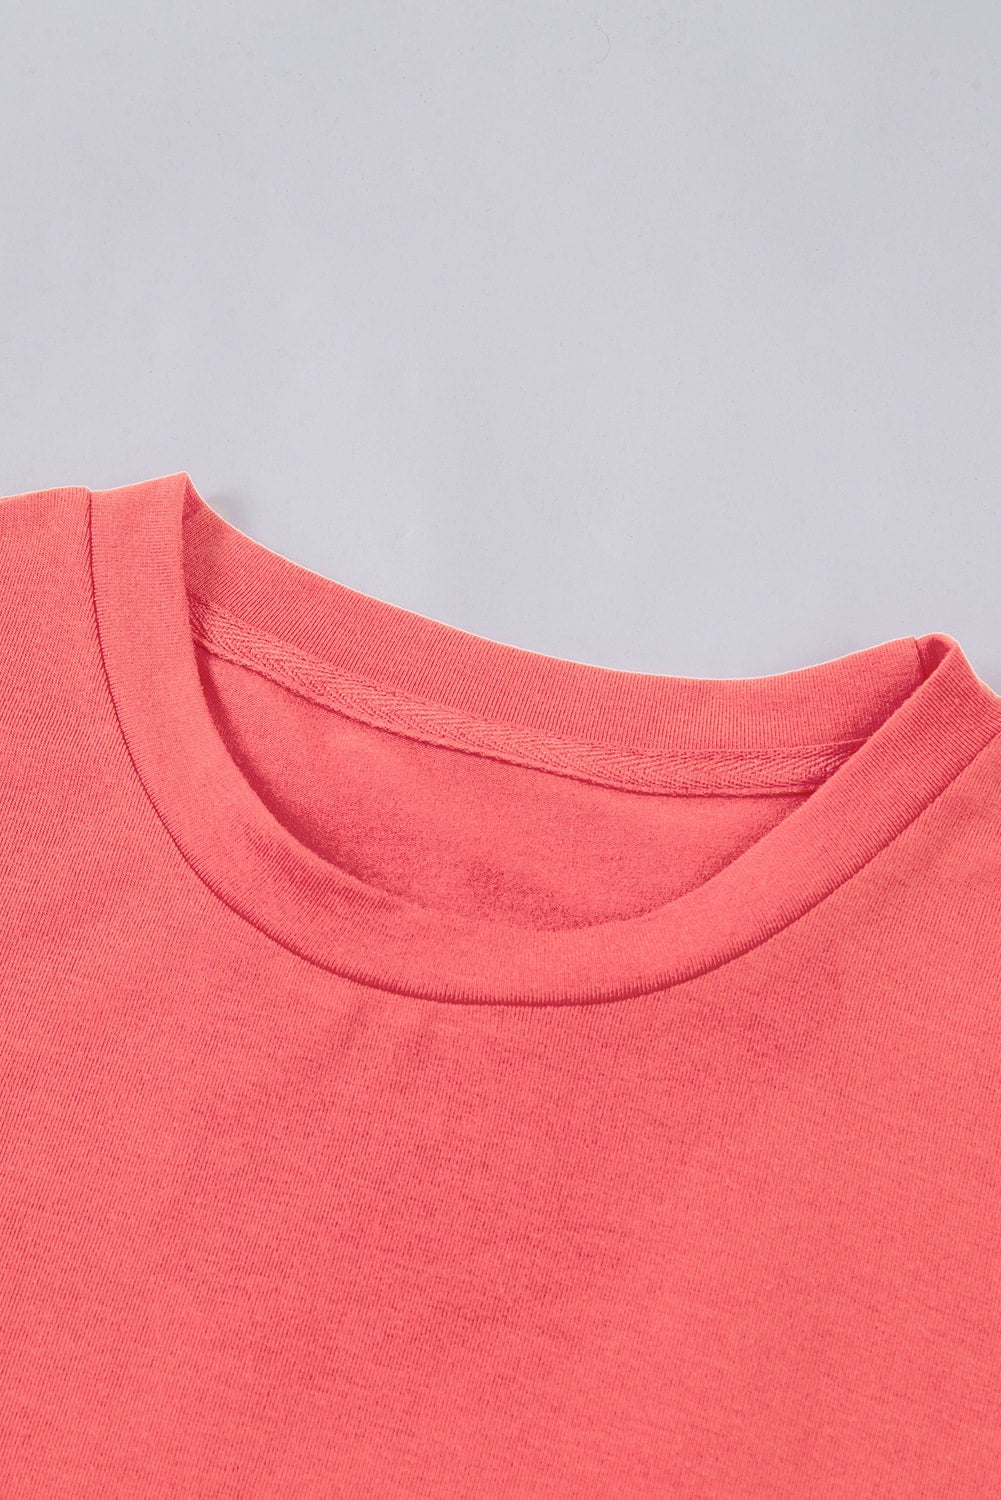 Ognjeno rdeča enobarvna majica z okroglim izrezom